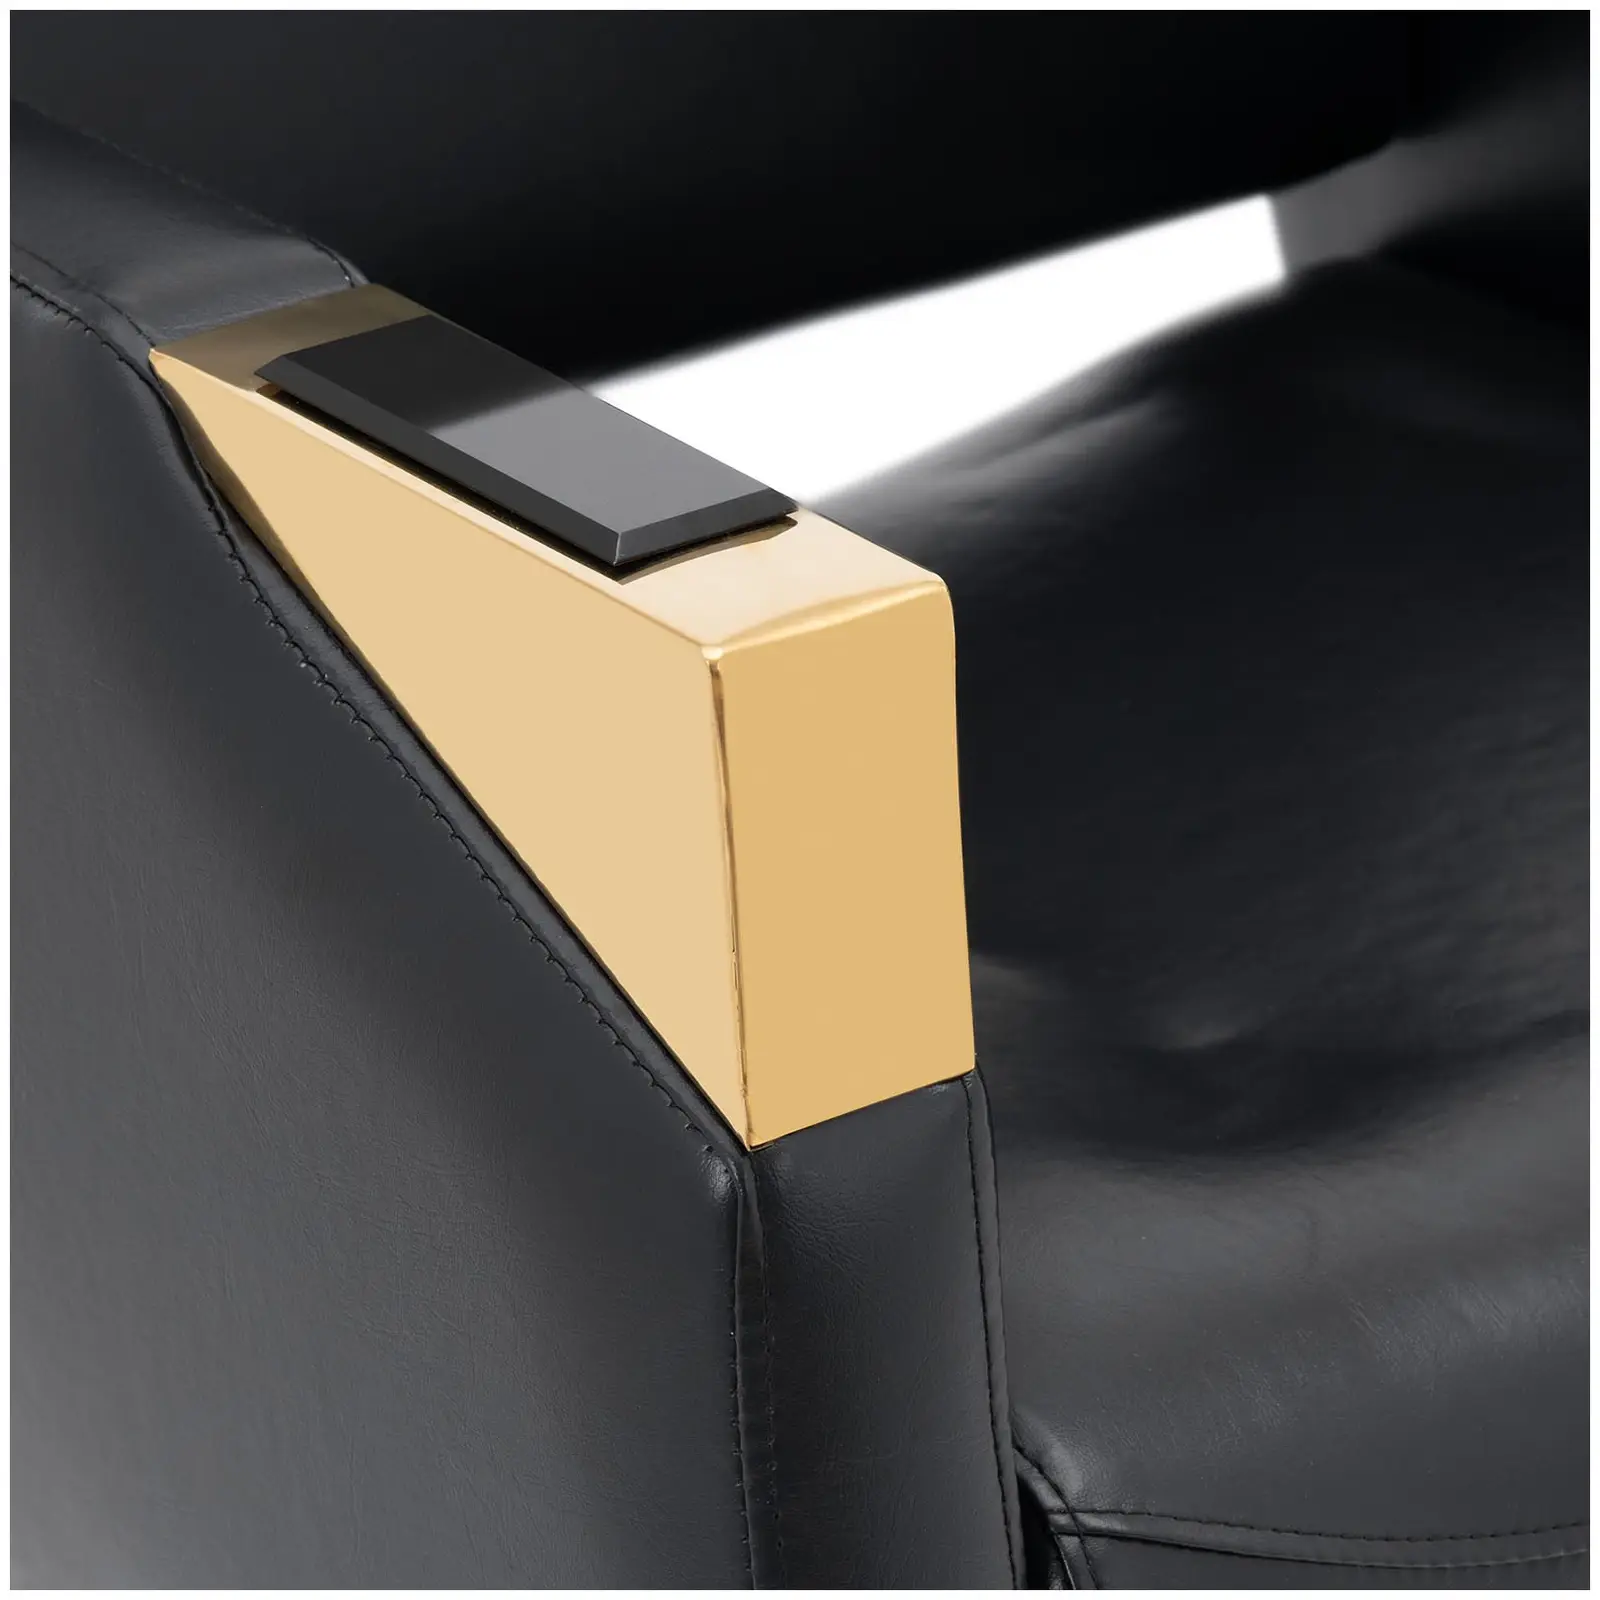 Salono kėdė su atramomis kojoms - 880 - 1030 mm - 200 kg - juoda / auksinė